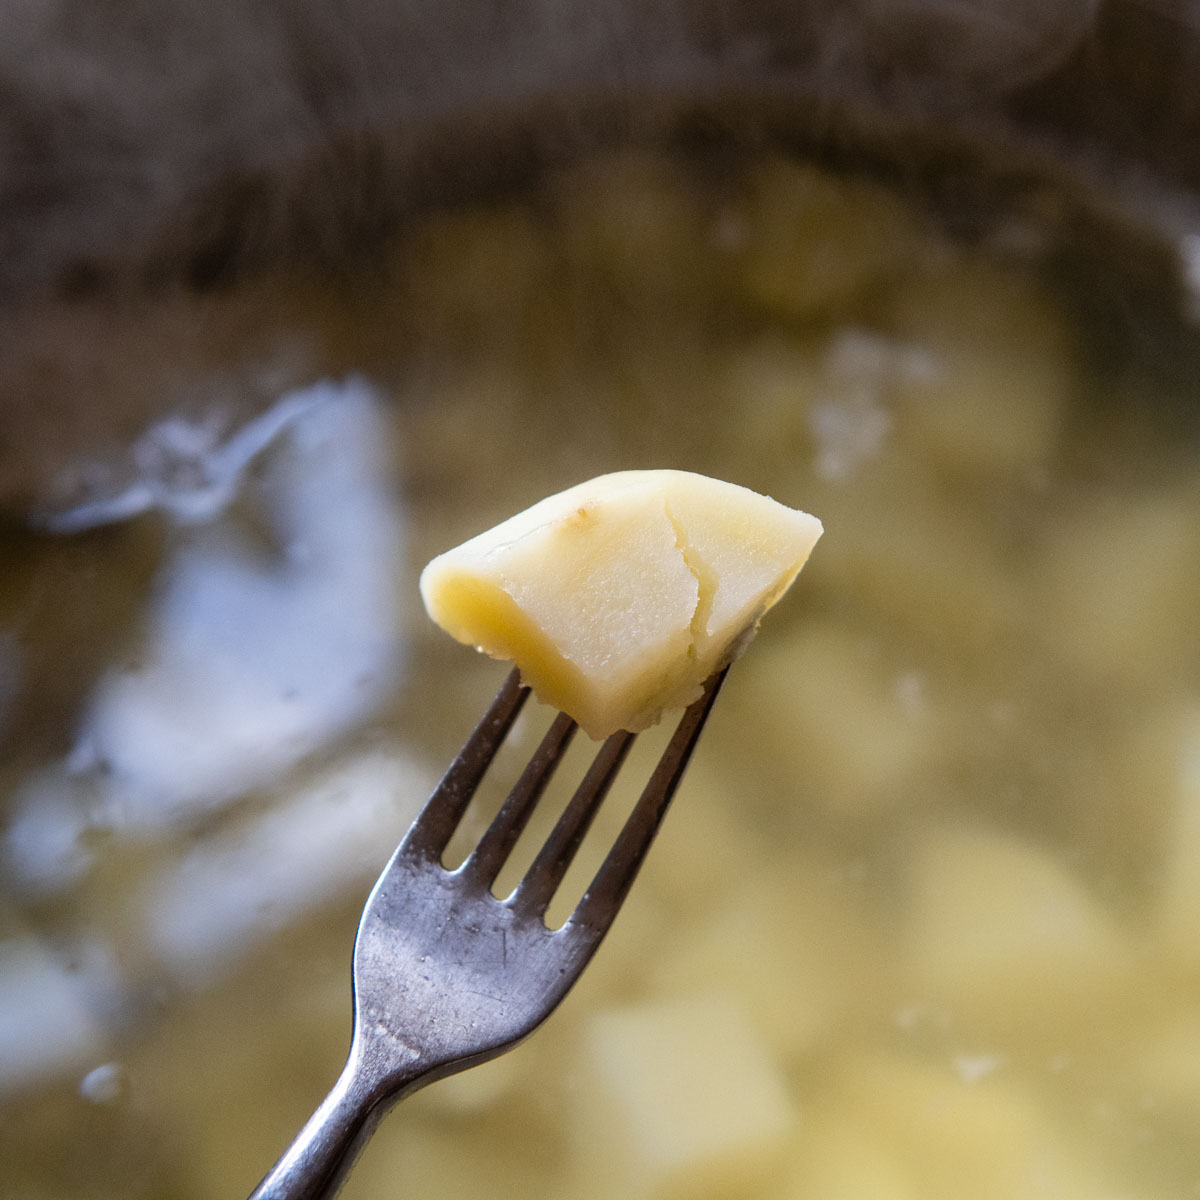 a fork piercing a boiled potato.